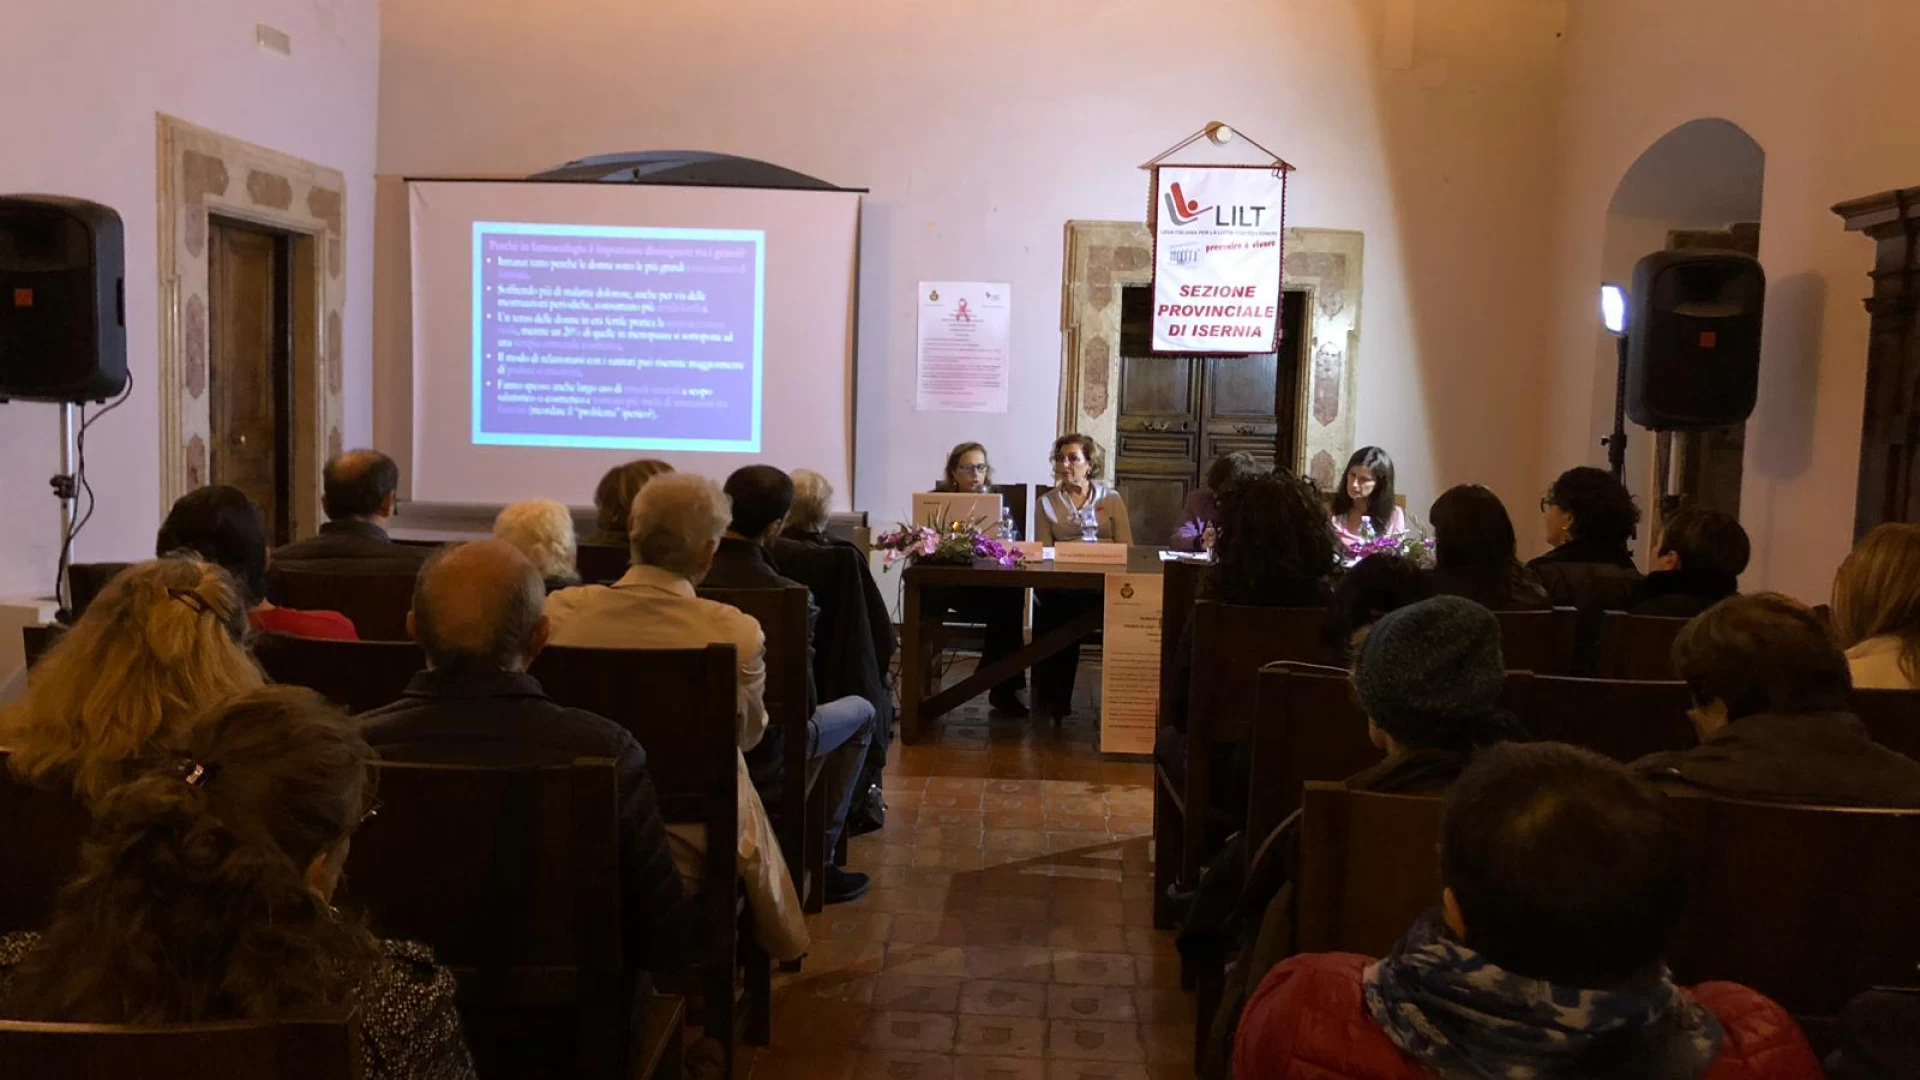 A Monteroduni la Lilt Accende un focus sulla prevenzione. Evento In programma sabato 30 novembre alle 17.